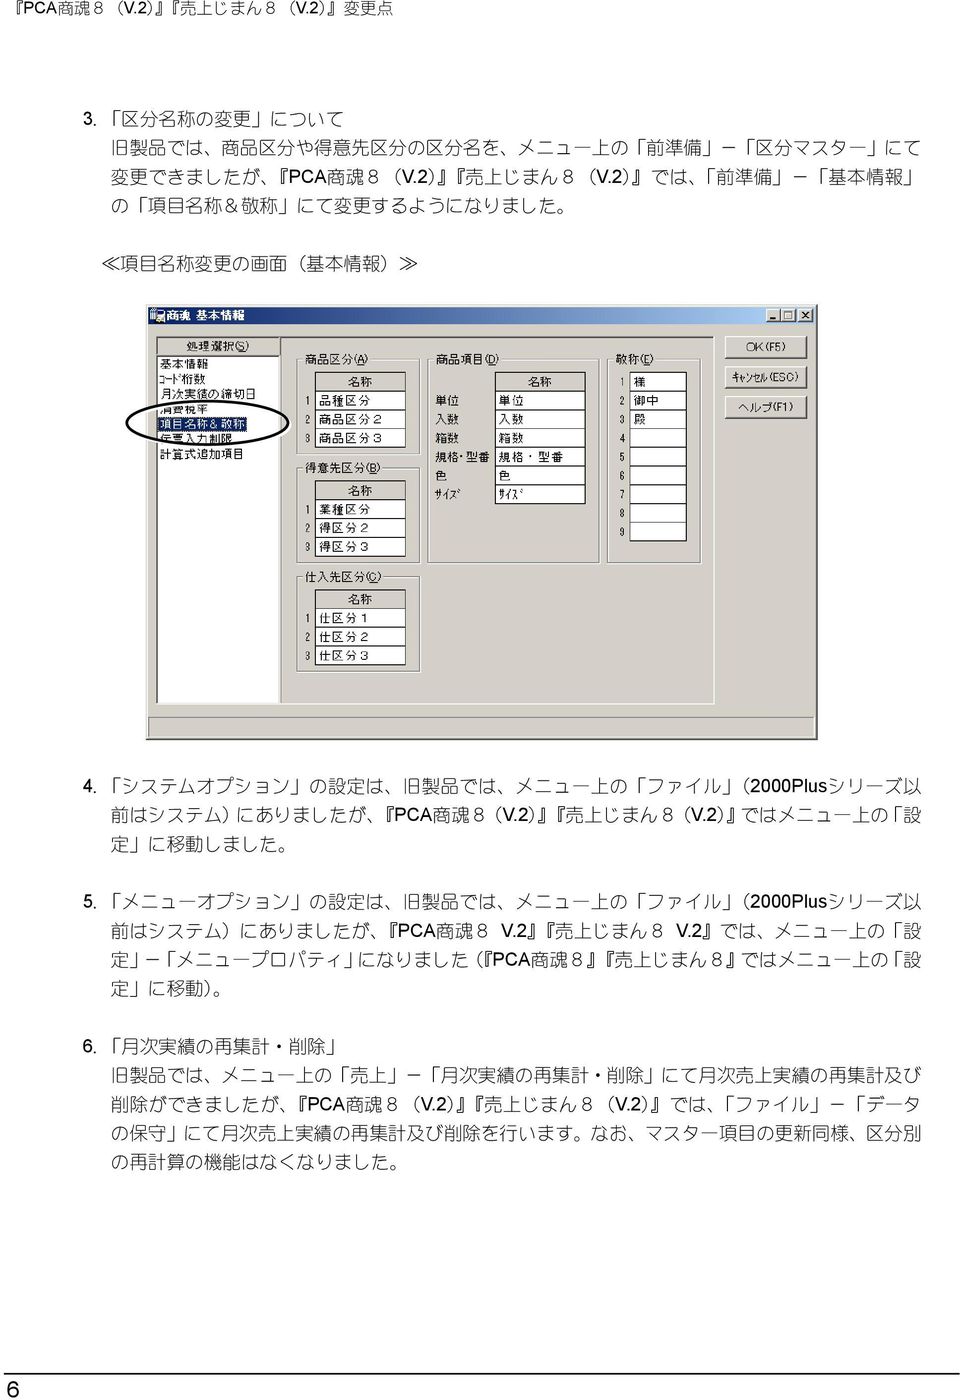 メニューオプション の 設 定 は 旧 製 品 では メニュー 上 の ファイル (2000Plusシリーズ 以 前 はシステム)にありましたが PCA 商 魂 8 V.2 売 上 じまん8 V.2 では メニュー 上 の 設 定 - メニュープロパティ になりました( PCA 商 魂 8 売 上 じまん8 ではメニュー 上 の 設 定 に 移 動 ) 6.